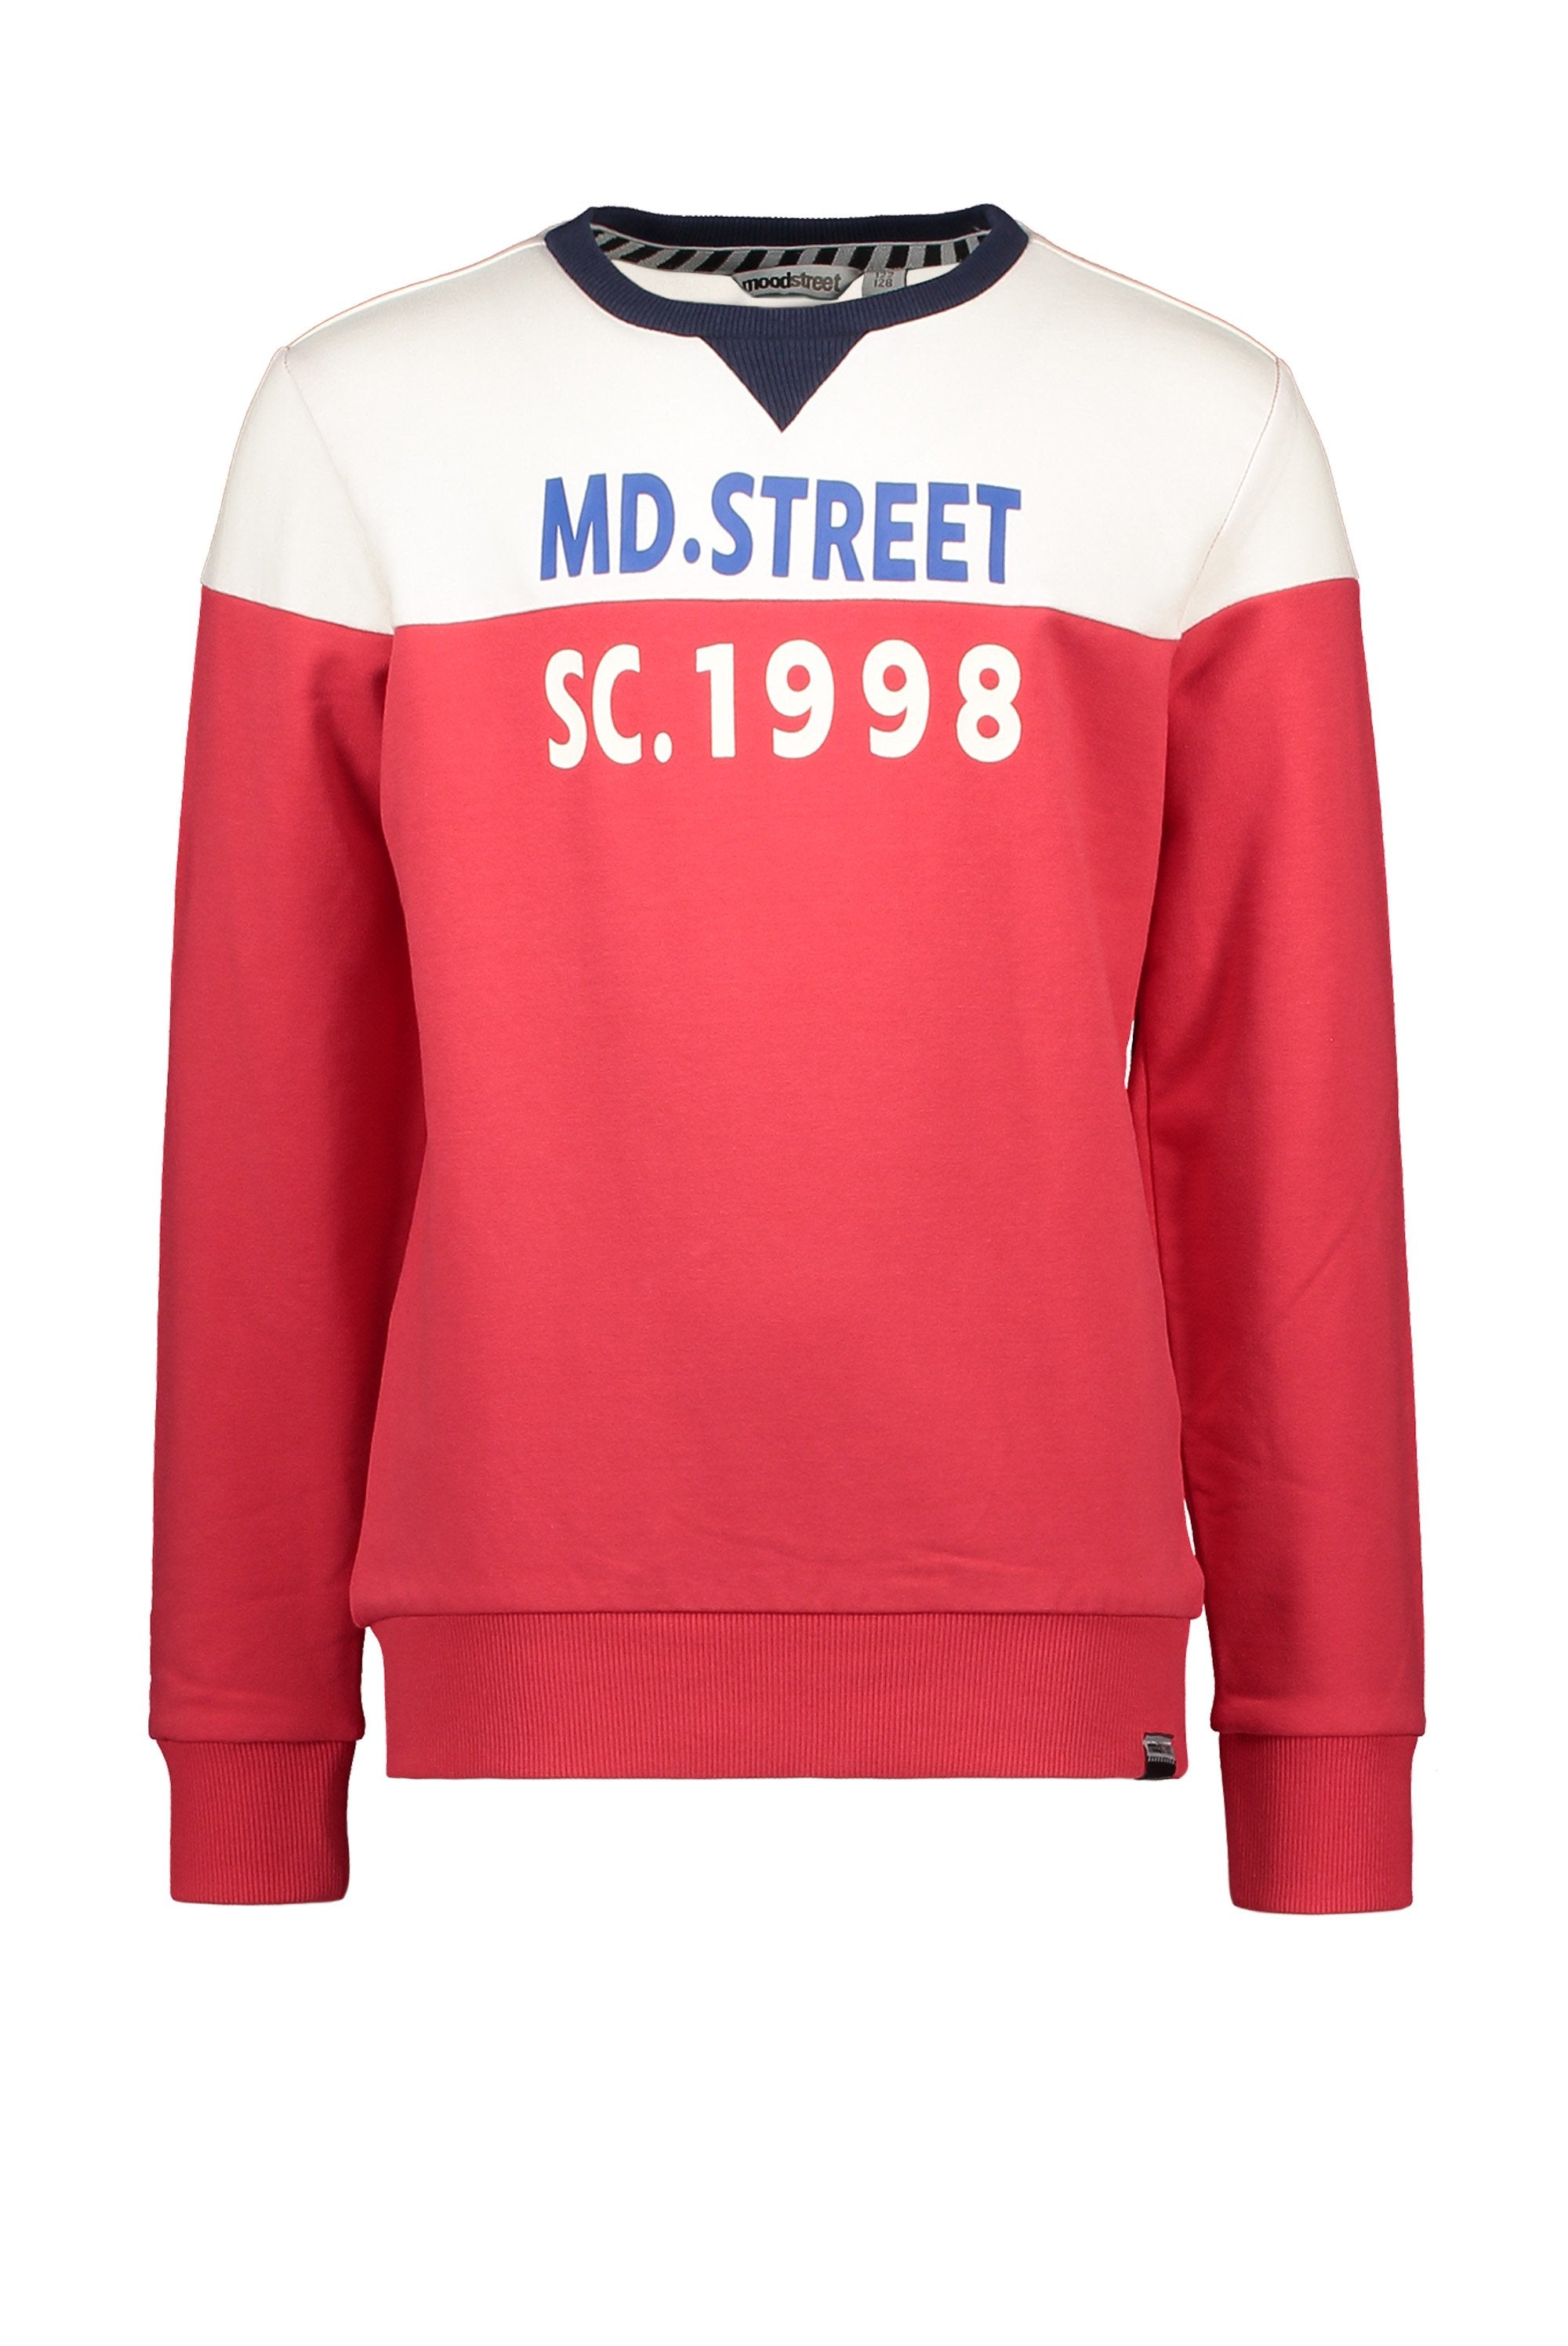 Jongens Sweater Cut&Sewn van Moodstreet in de kleur Red in maat 122/128.